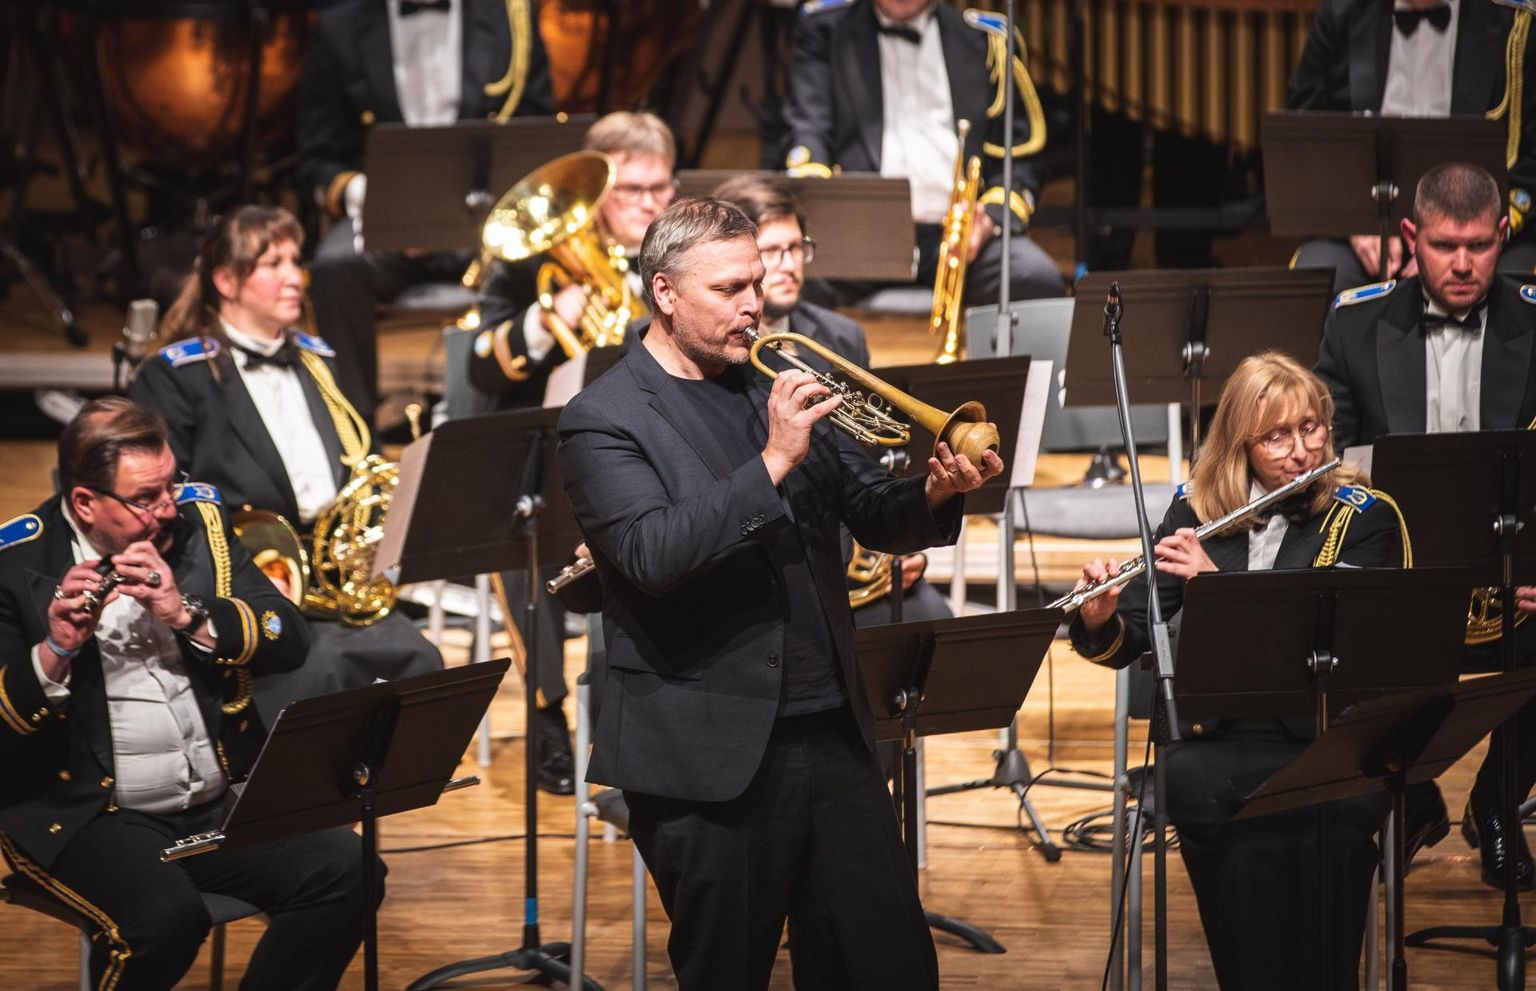 Esmakordselt Eestis sai kuulda kontserdil ka Eino Tambergi «Concertino trompetile ja puhkpillidele op. 129», solistiks Indrek Vau.